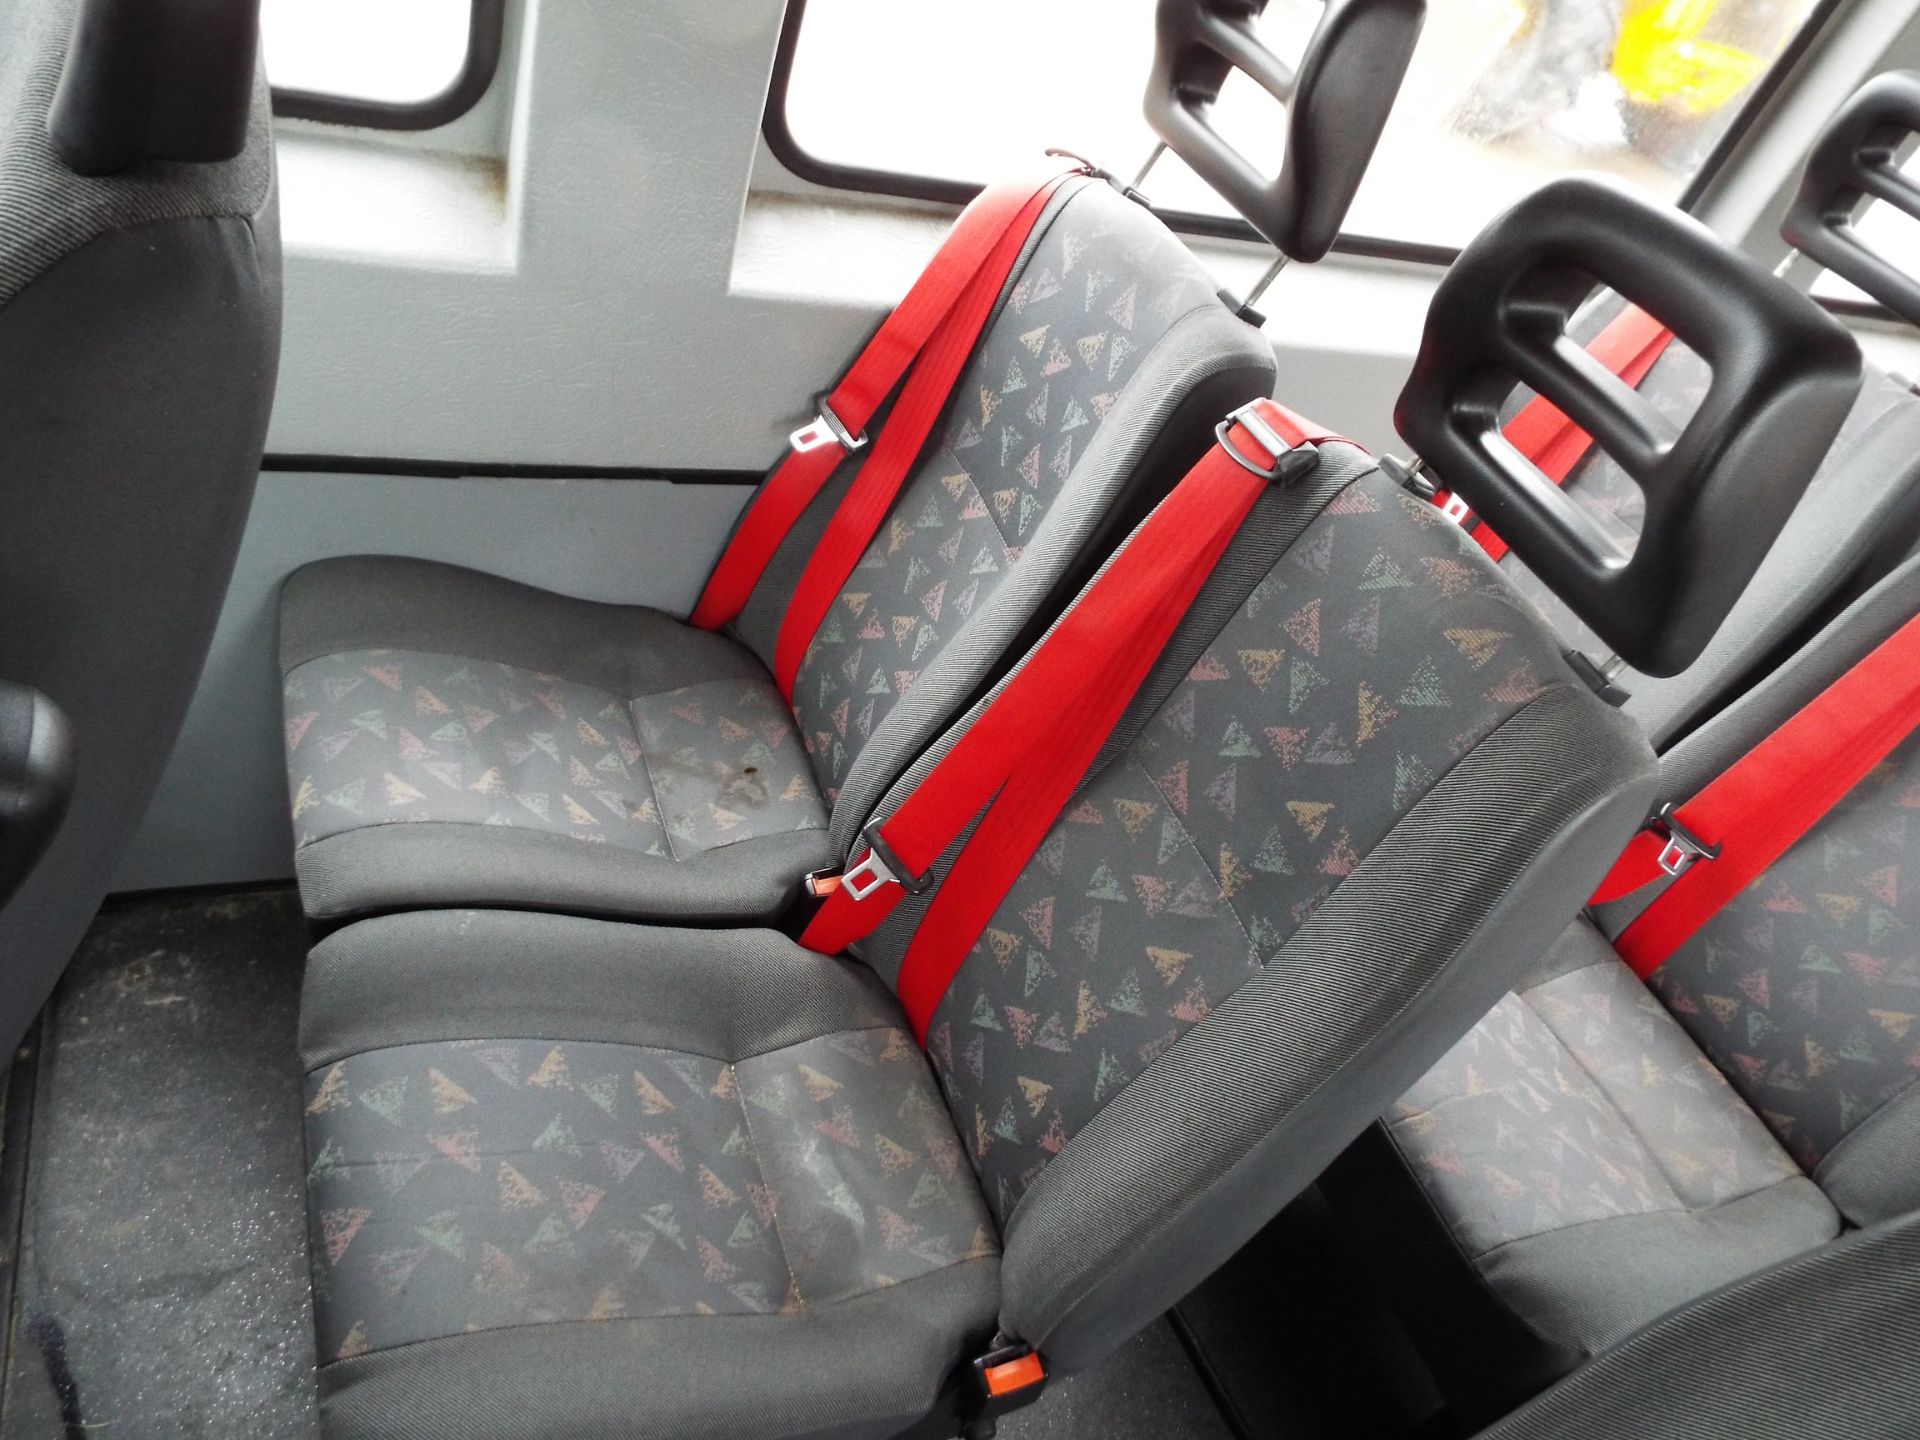 Citroen Relay 17 Seater Minibus - Image 14 of 19